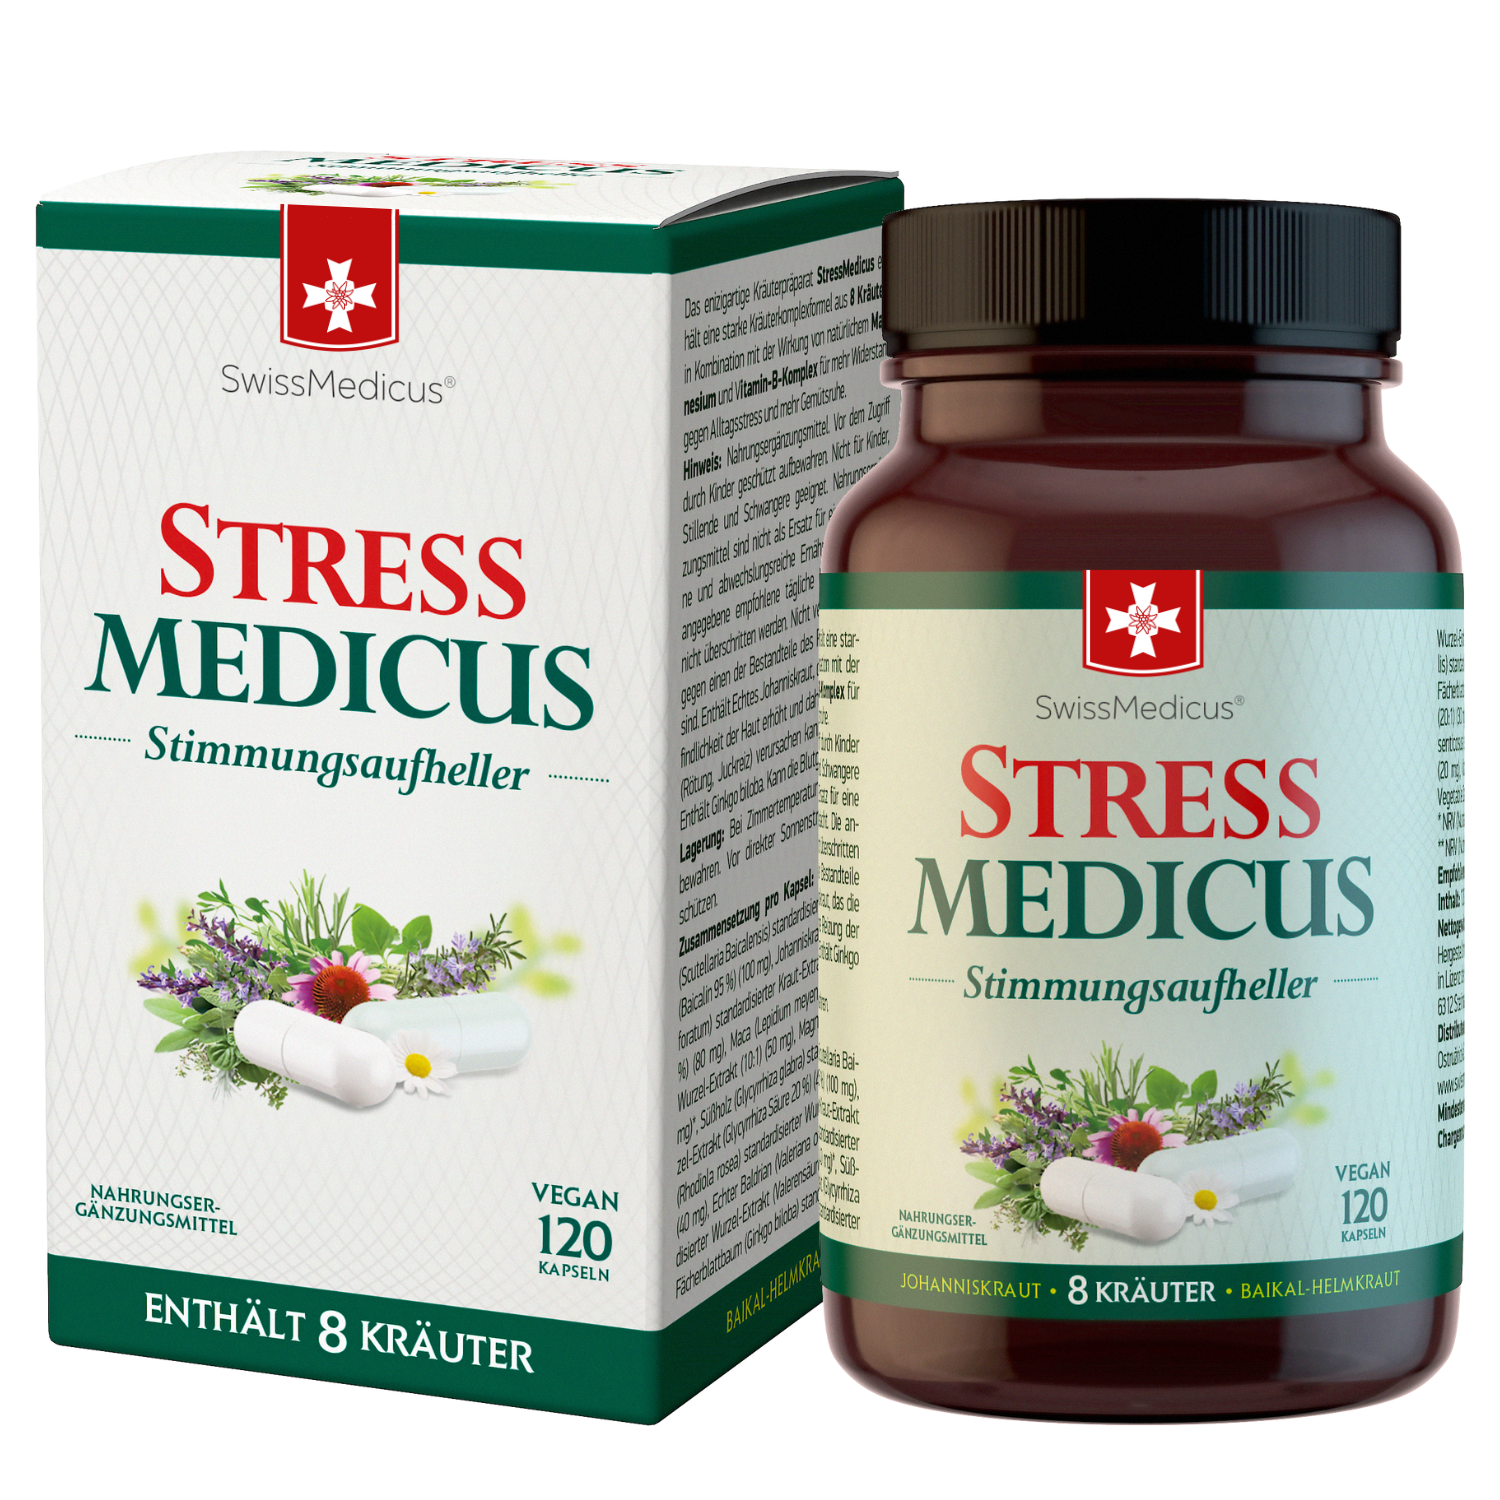 StressMedicus 120 capsules